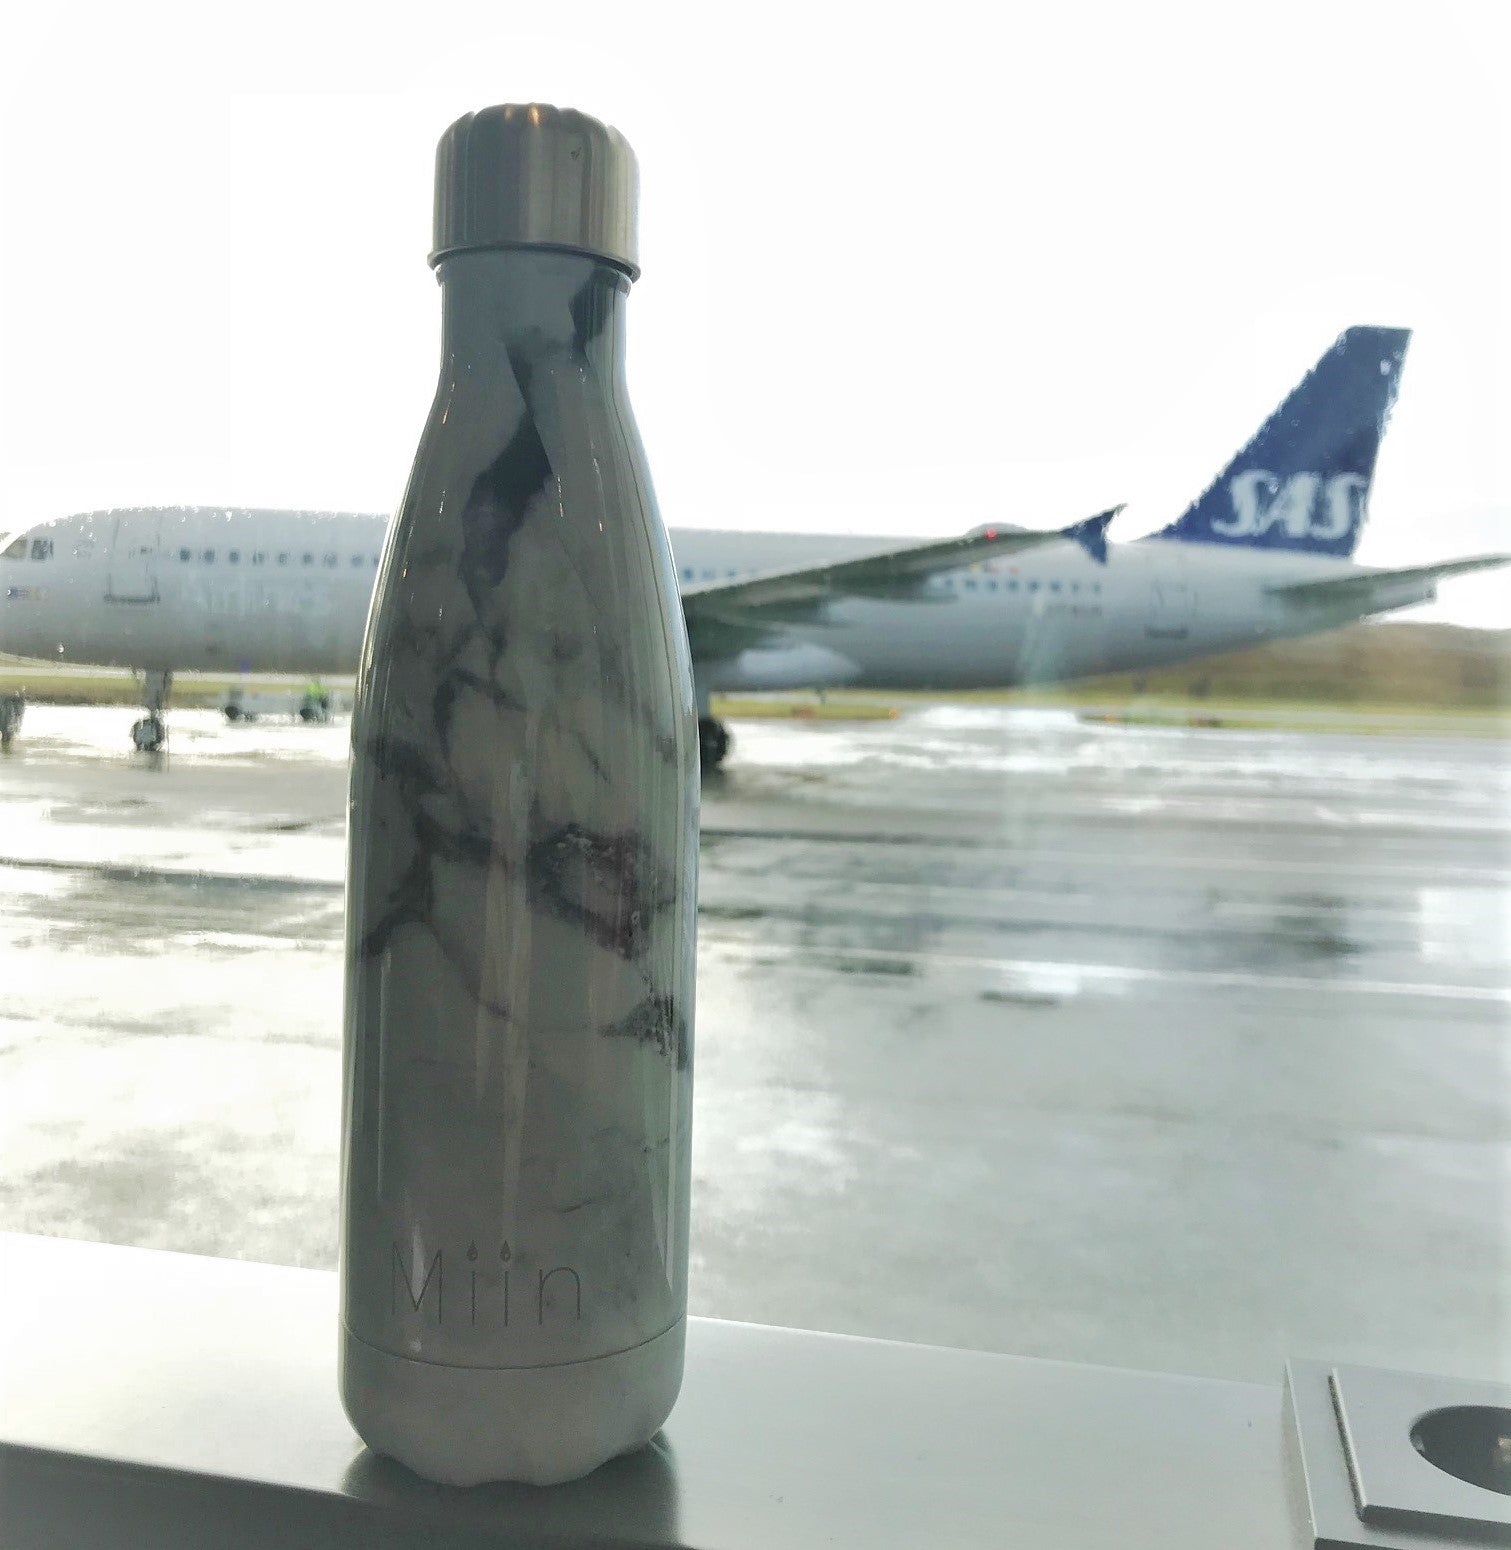 Miin Bottle vandflaske med ombord på flyet